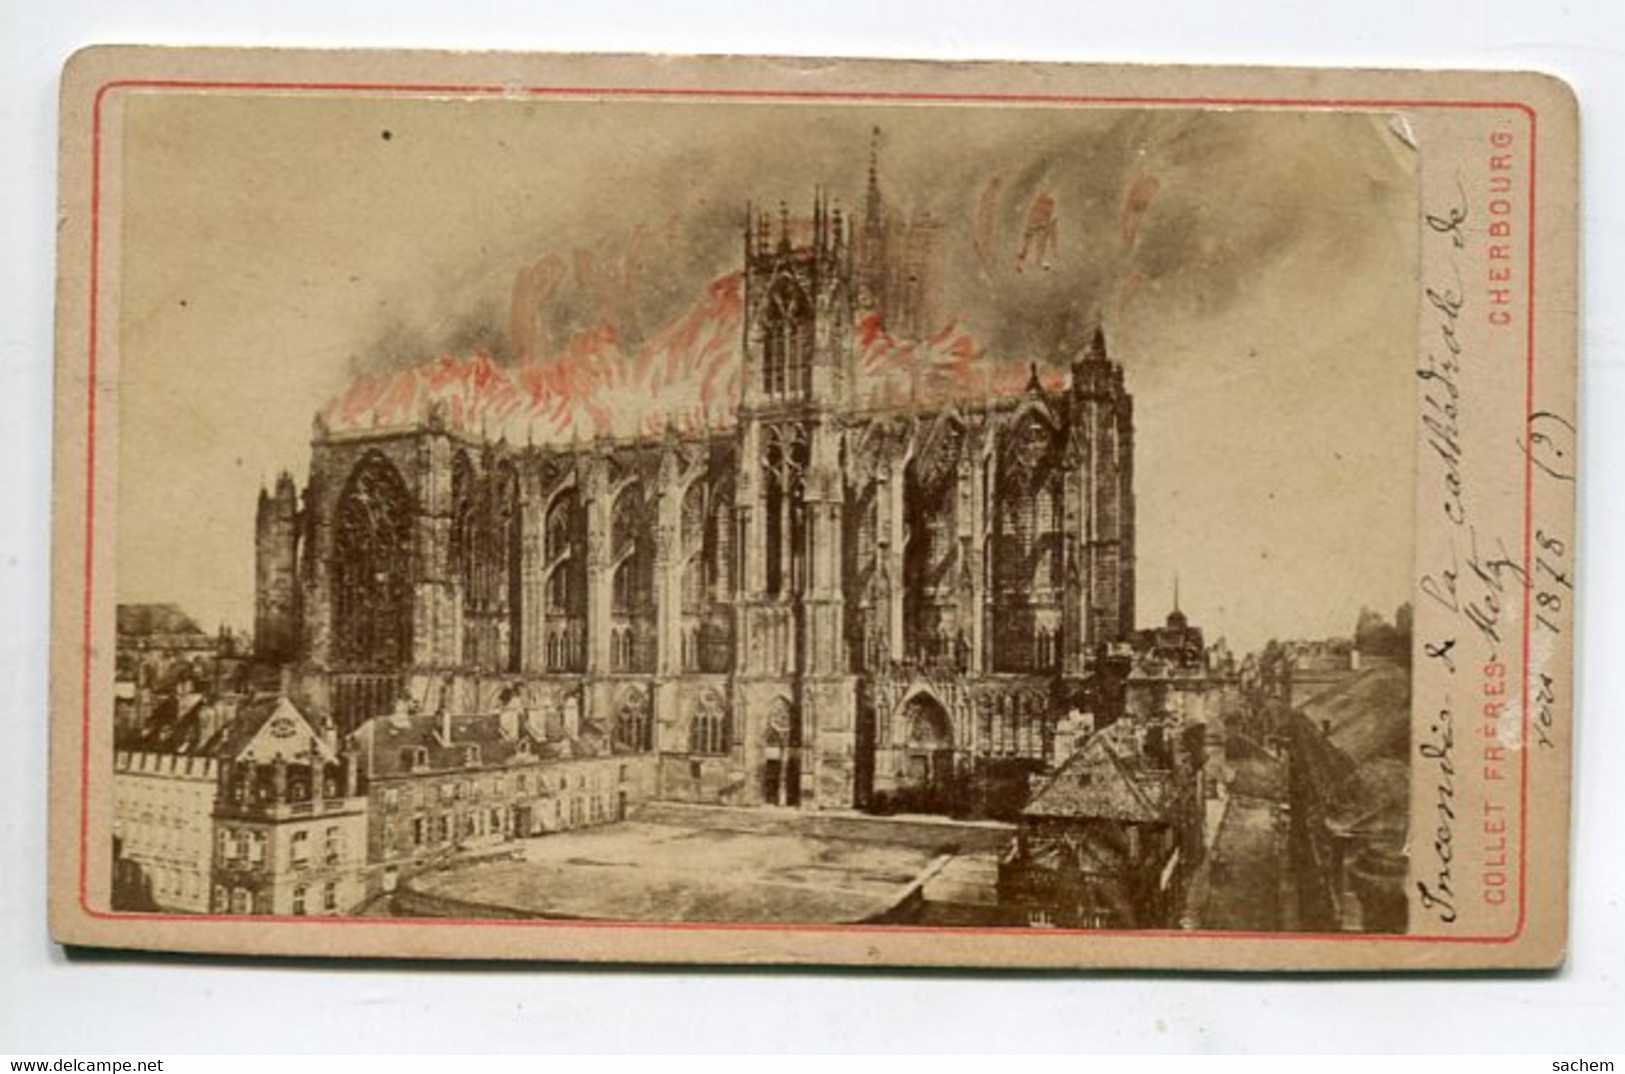 57 METZ Photographie CDV  Incendie Cathédrale 7 Mai 1877   Photographe COLLET  - Dim 6,5 Cm X 10,5 Cm     D24 2021 - Metz